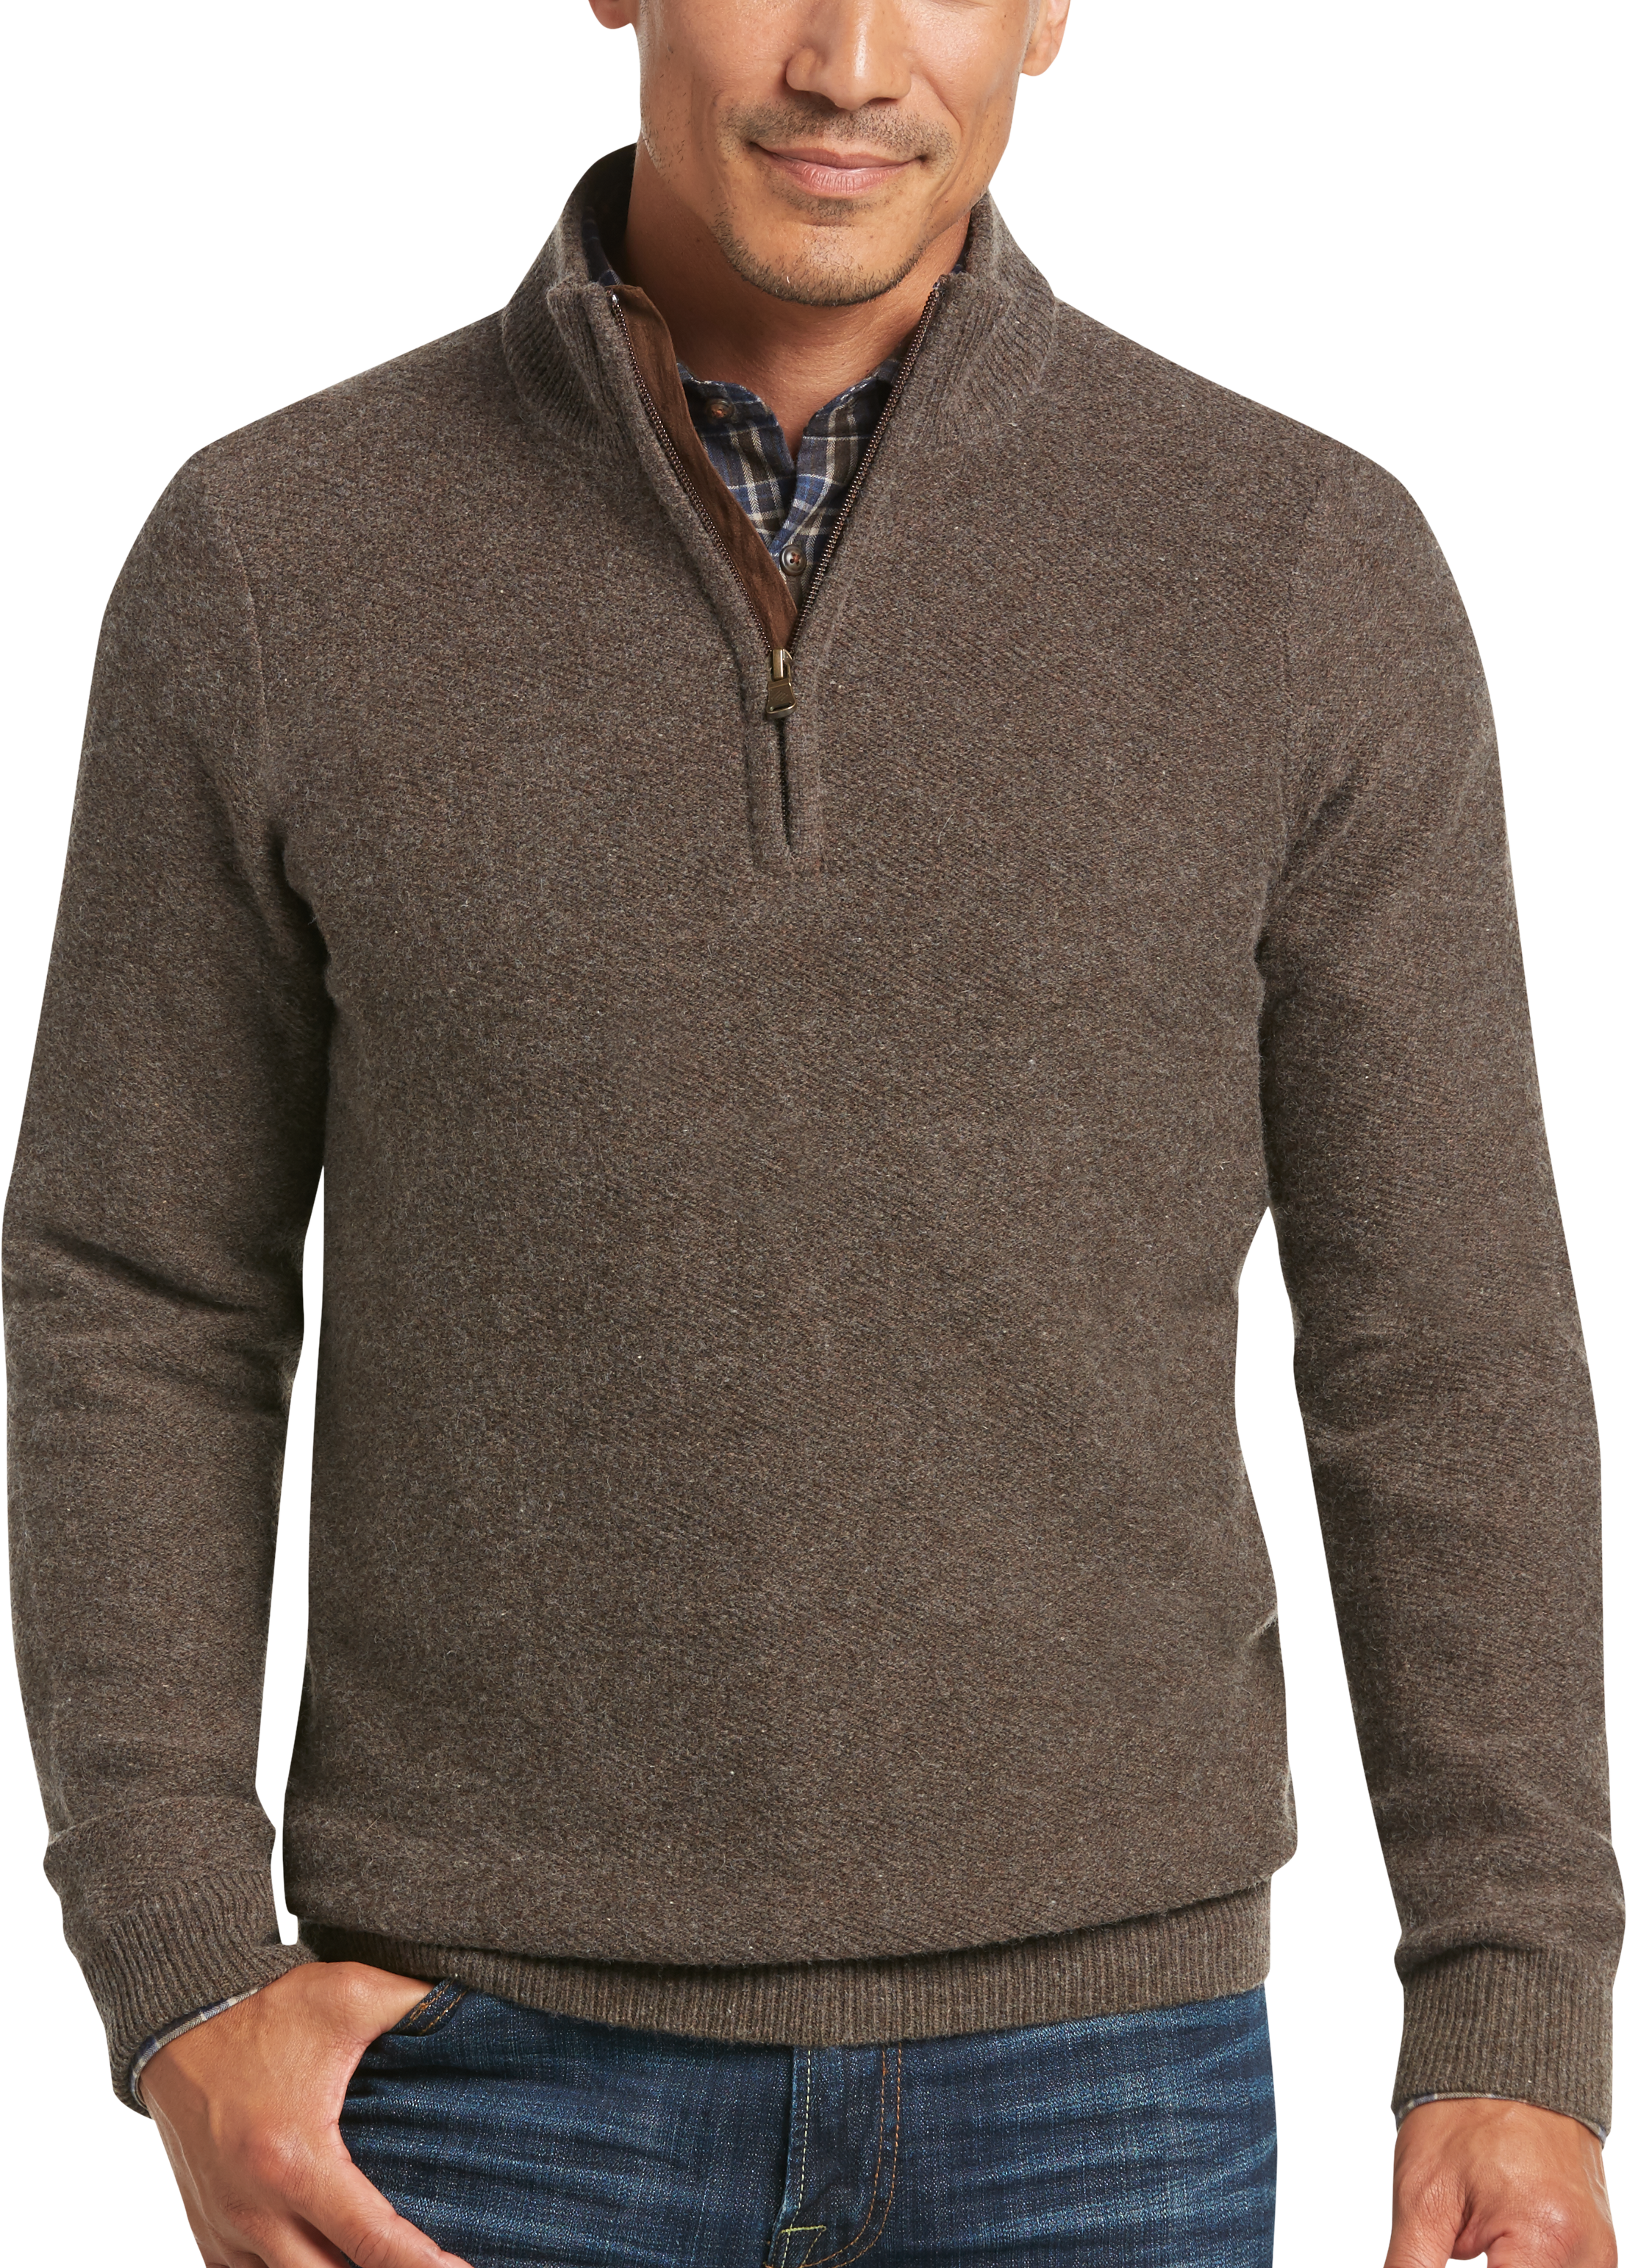 Joseph Abboud Brown Mock-Neck 1/2 Zip Sweater - Men's Sale | Men's ...